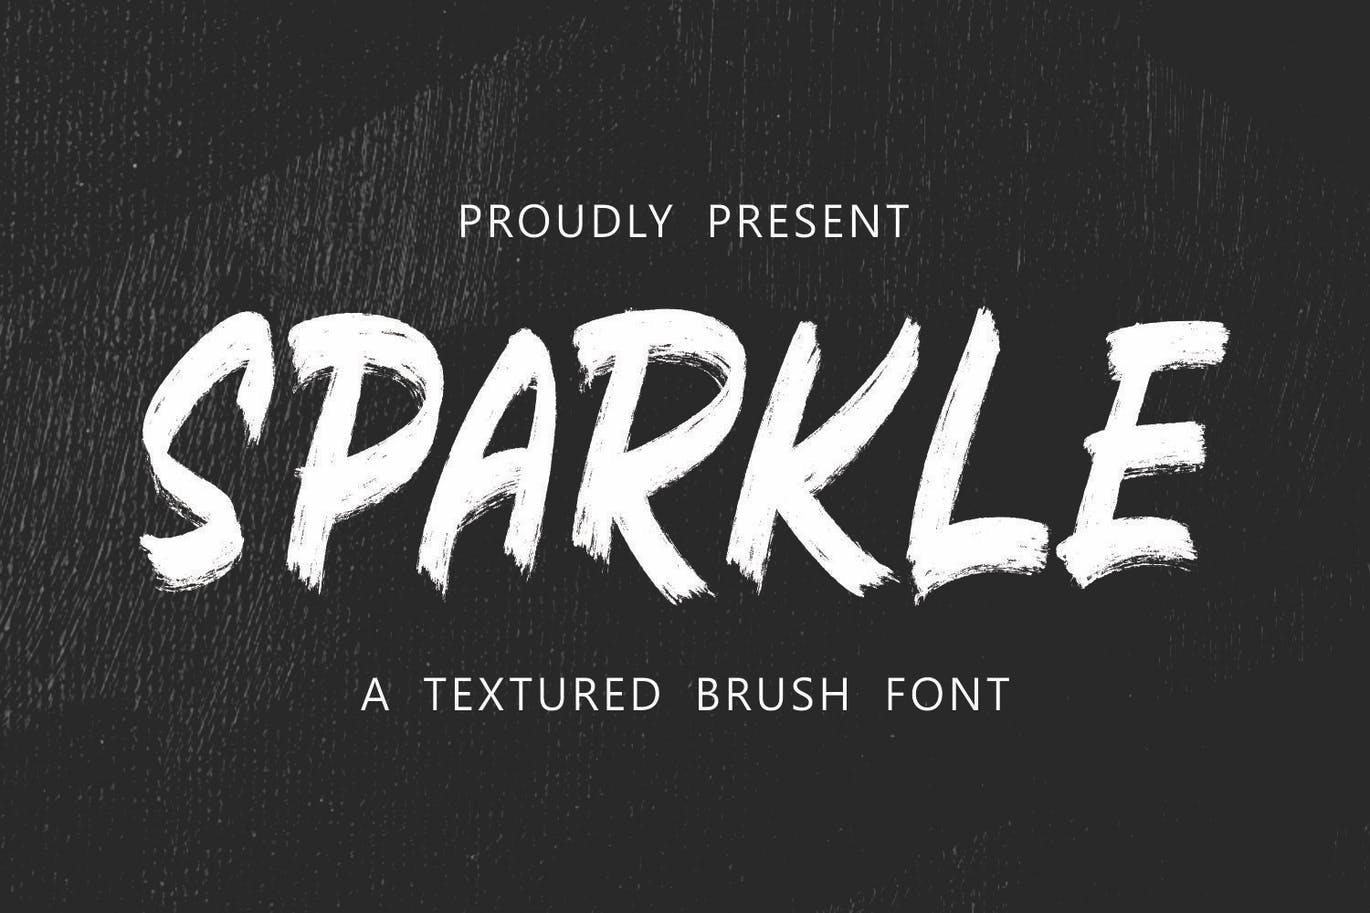 时尚设计纹理笔刷英文字体 Sparkle – Textured Brush Font